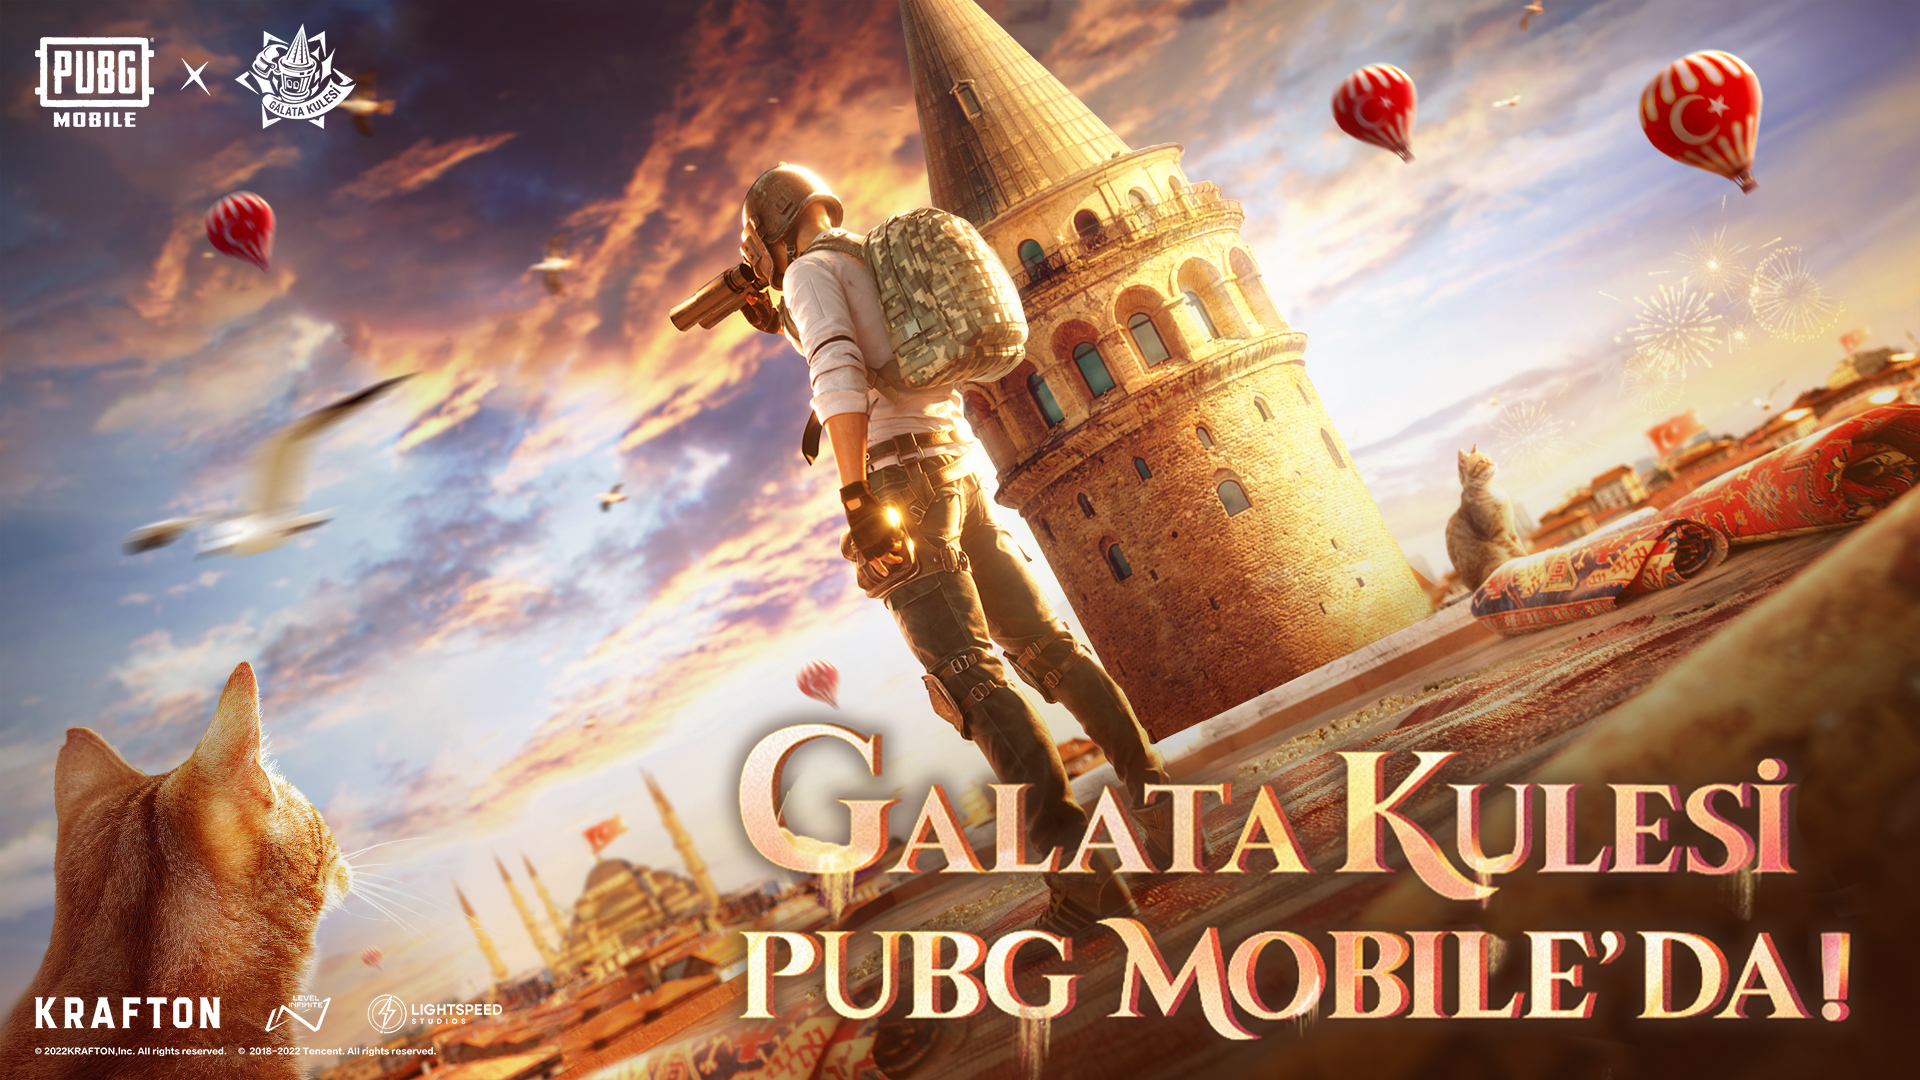 PUBG Mobile Galata Kulesi PUBG Mobile arenasına geliyor!